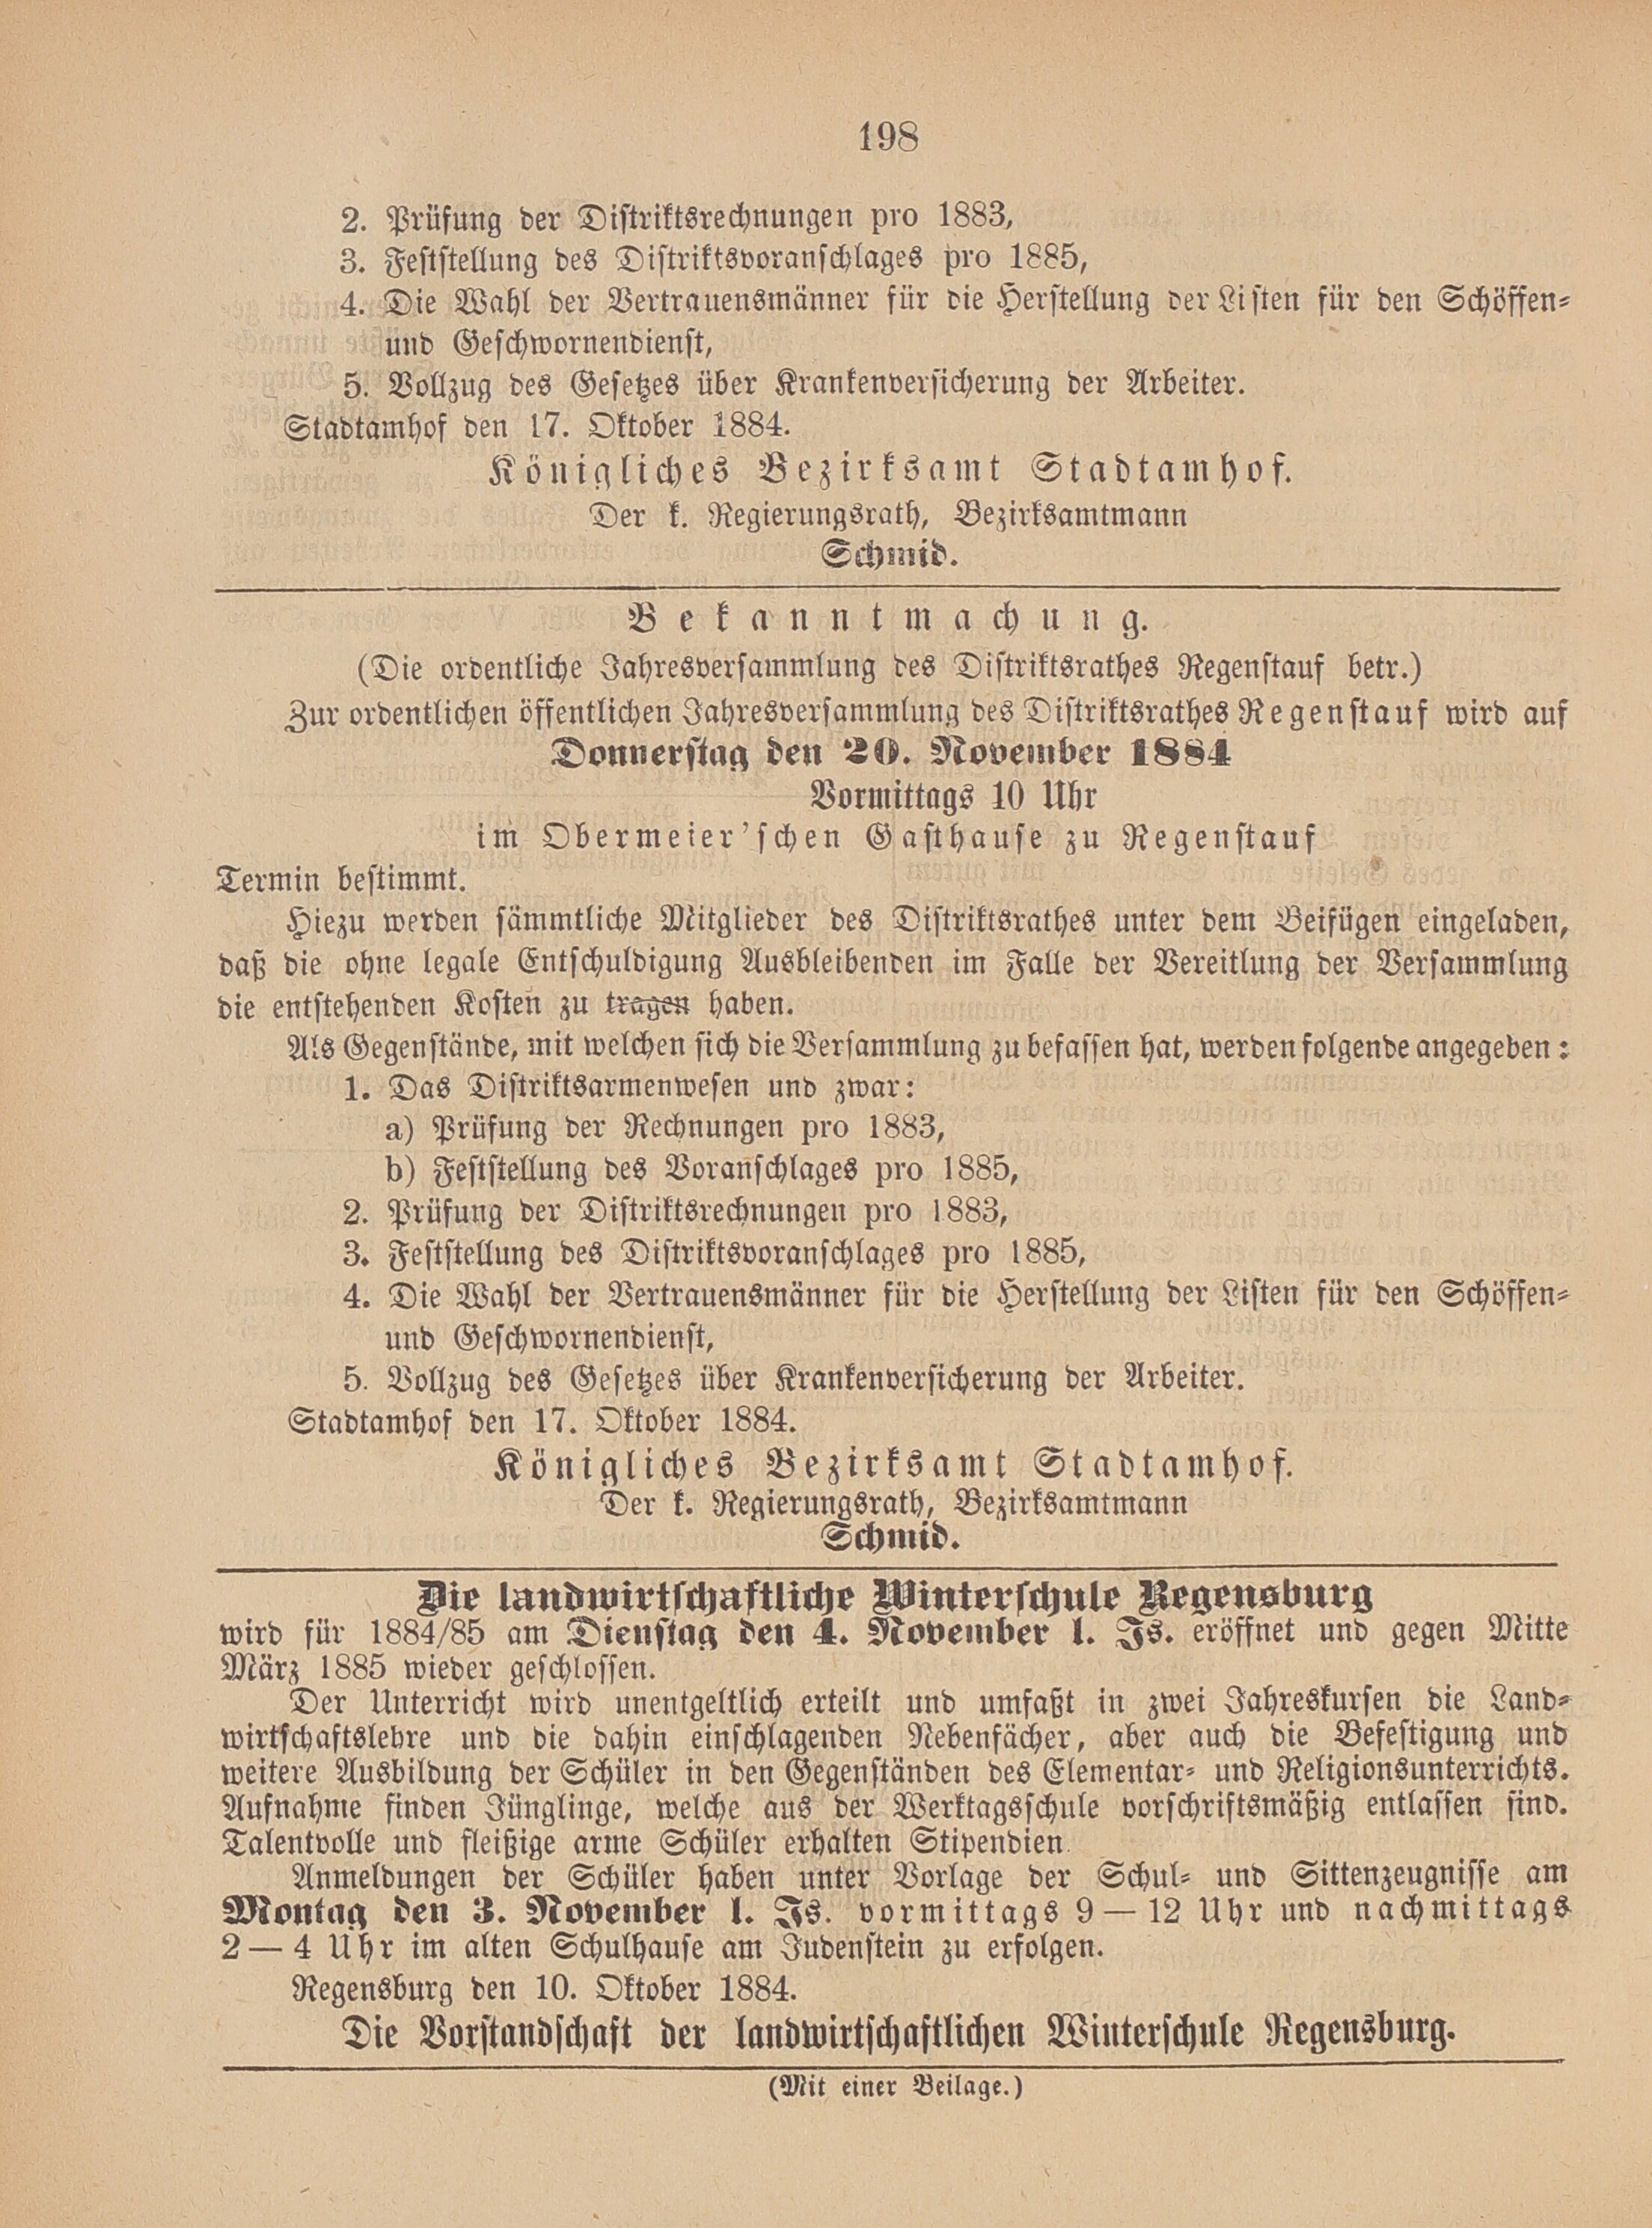 4. amtsblatt-stadtamhof-regensburg-1884-10-19-n42_2030